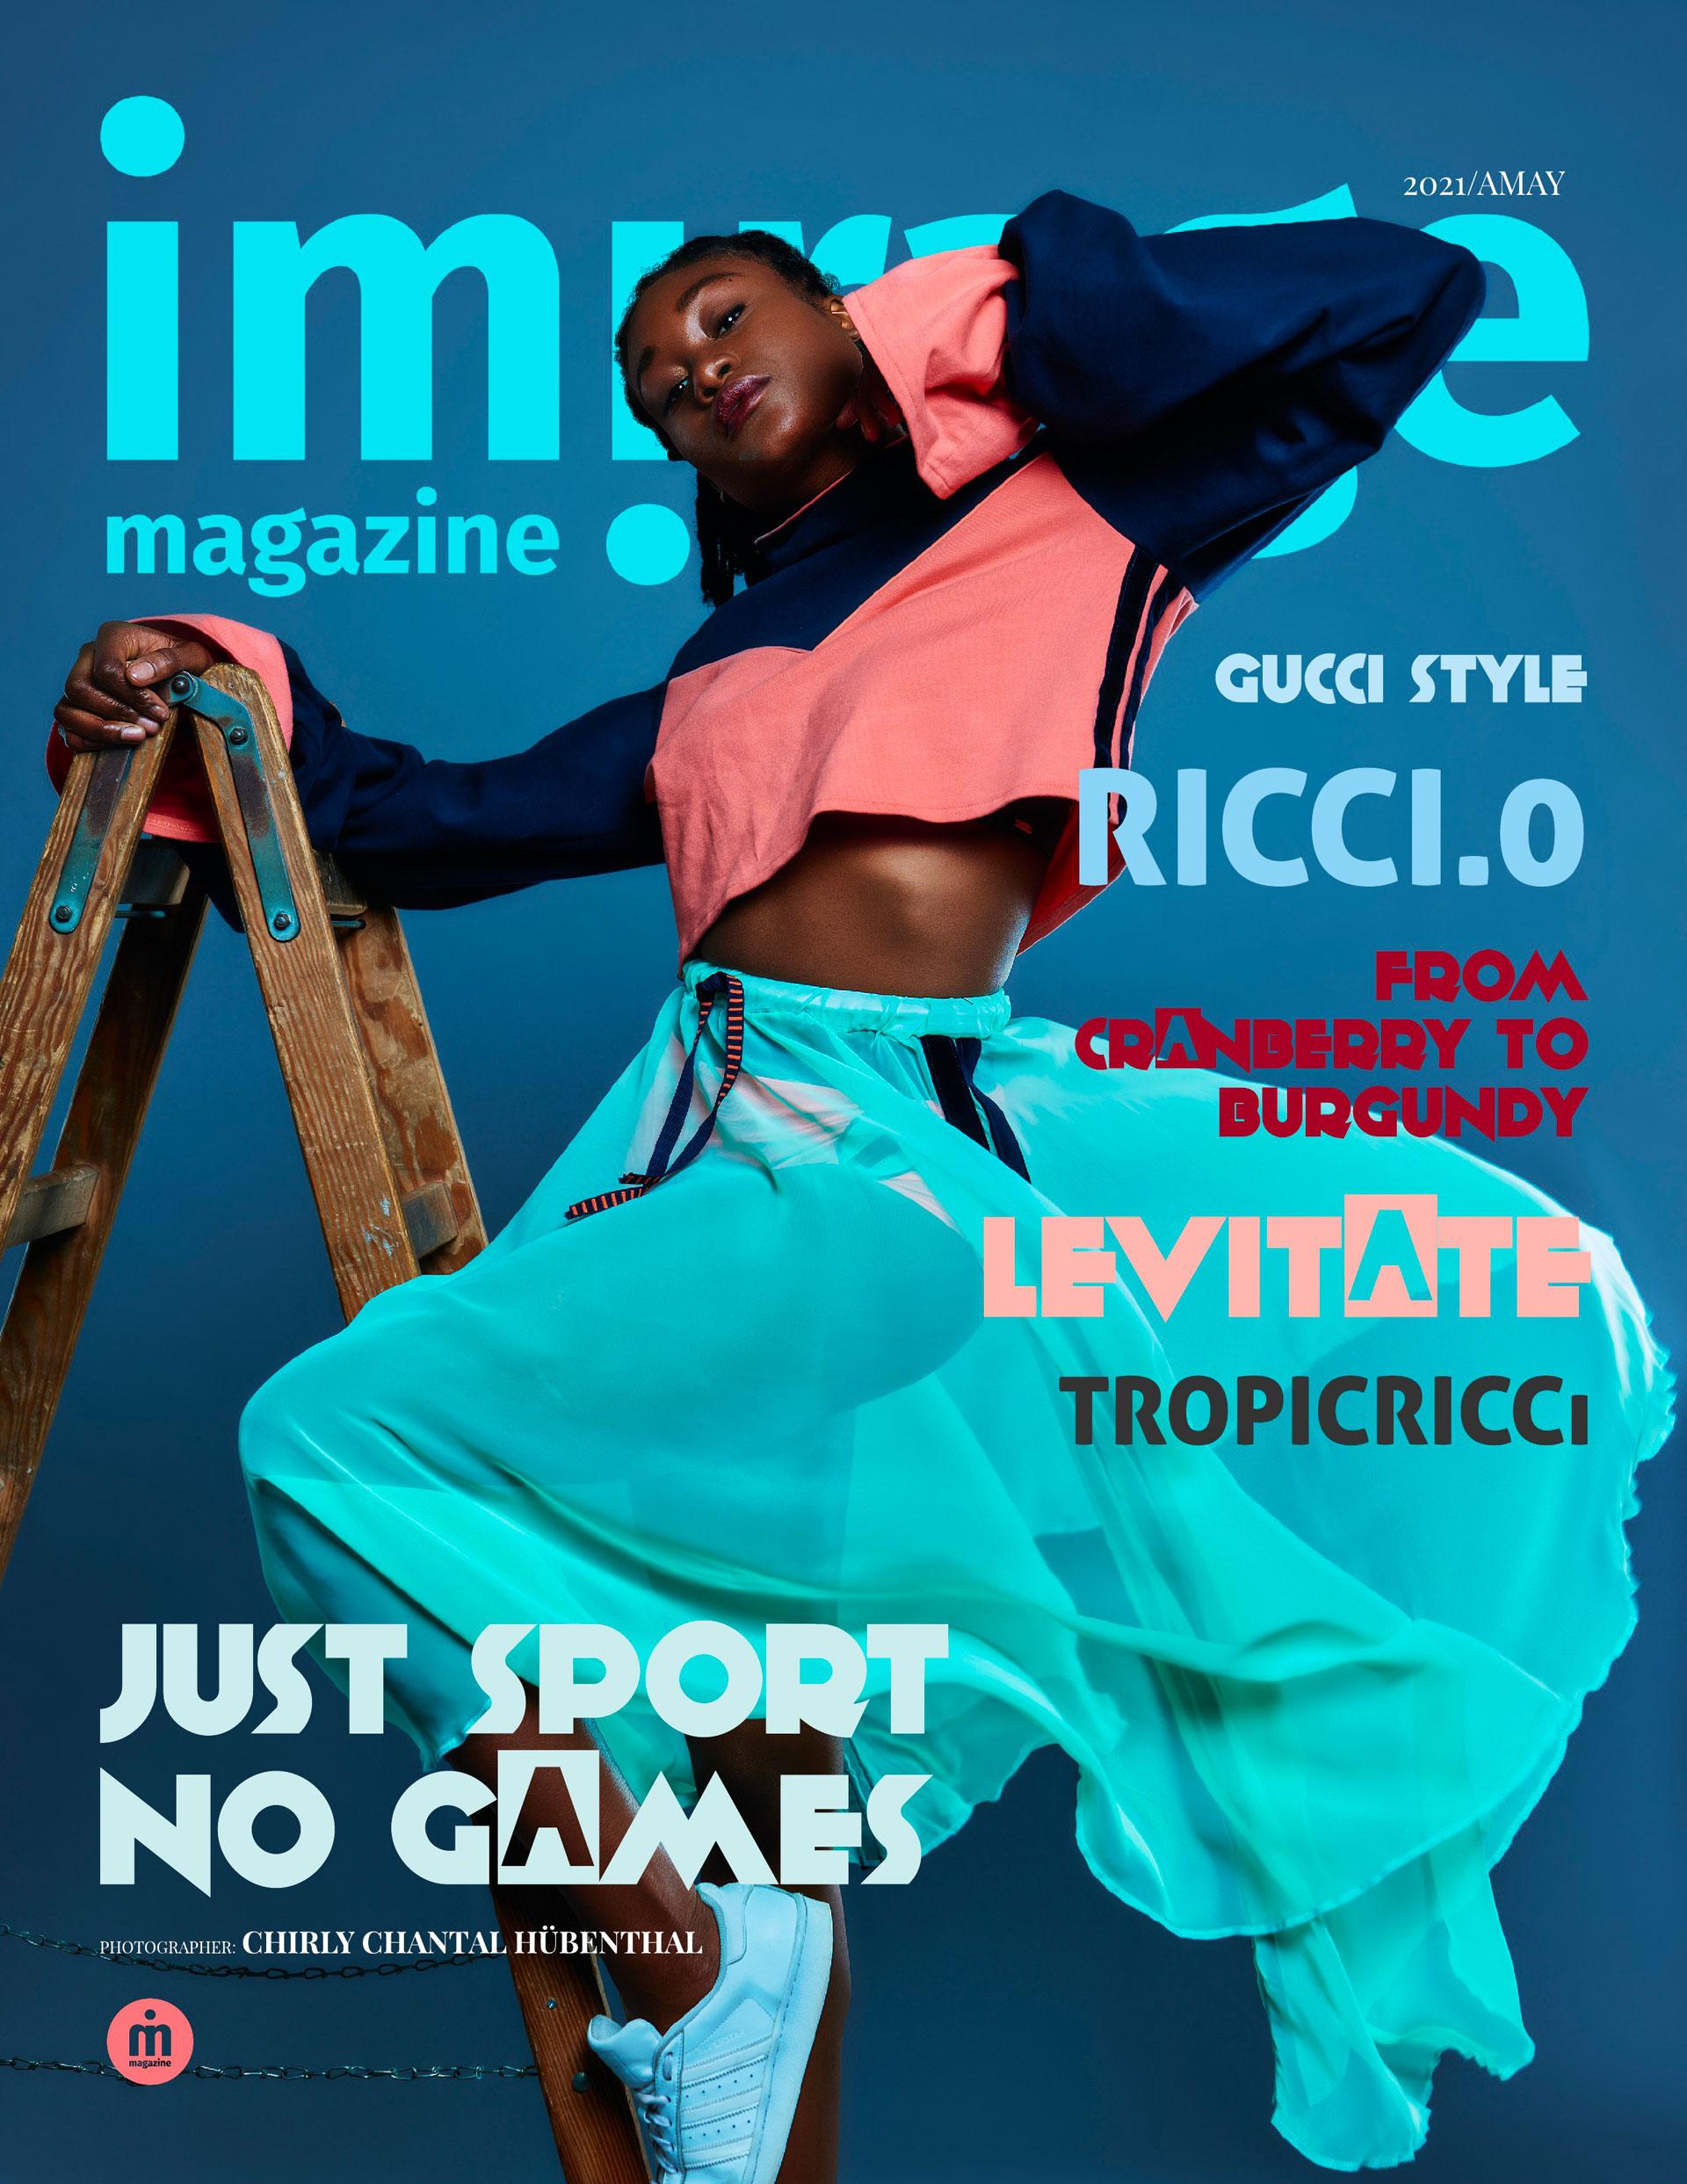 Imirage Magazine Just sport no games